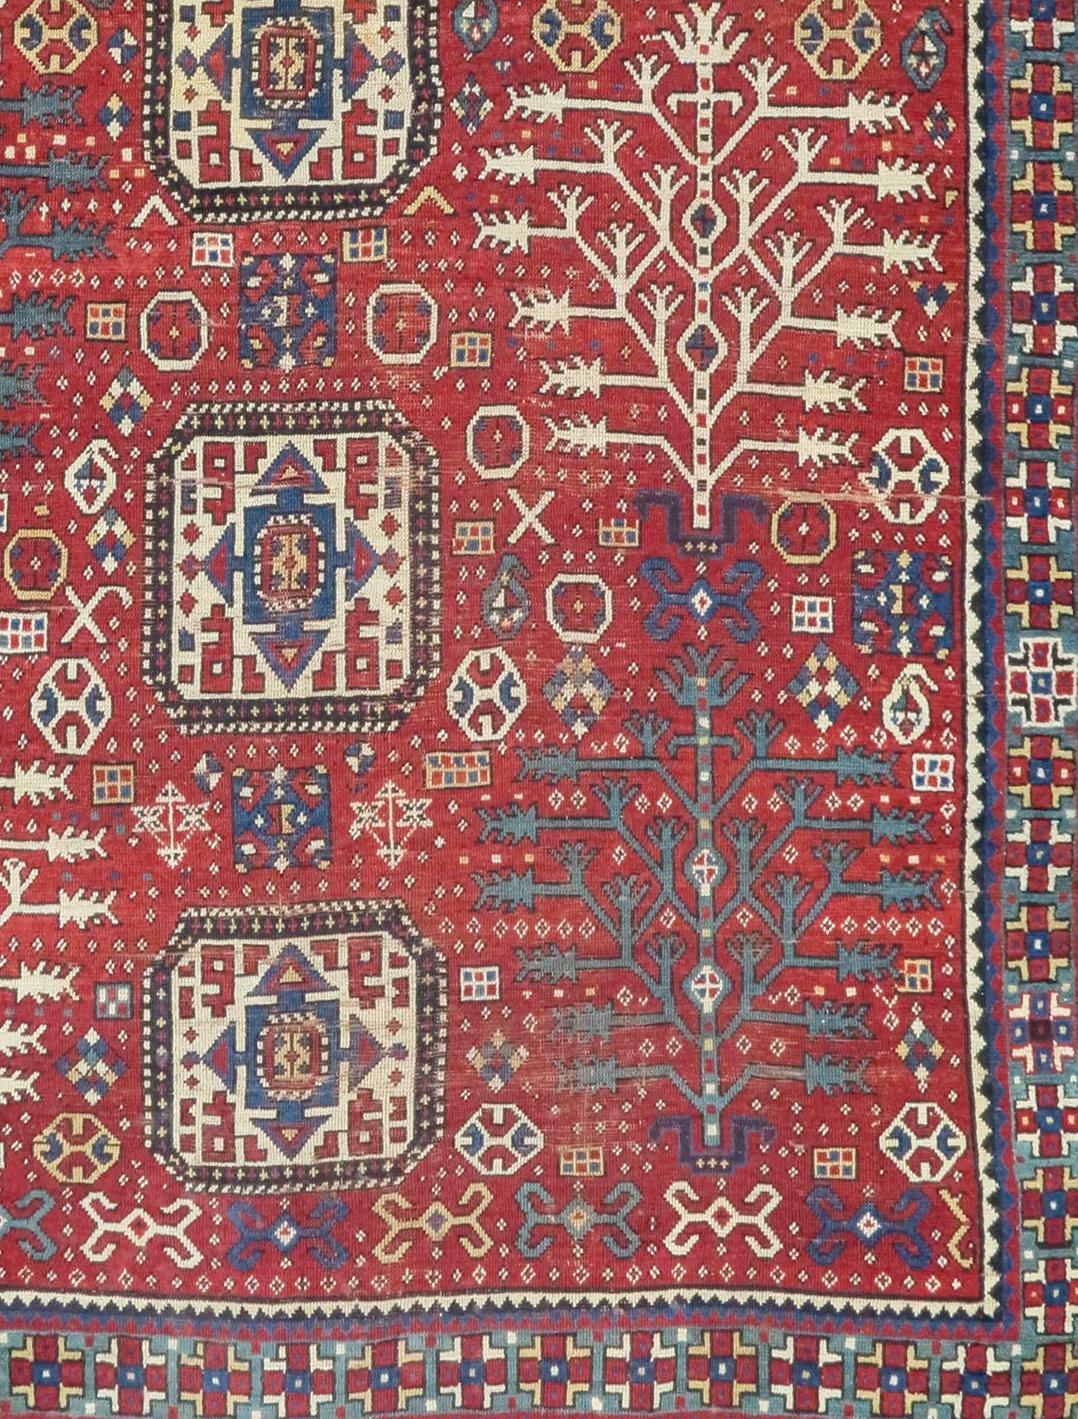 Caucasian tree Kazak rug, 19th C (4th Q). Measures 5'9